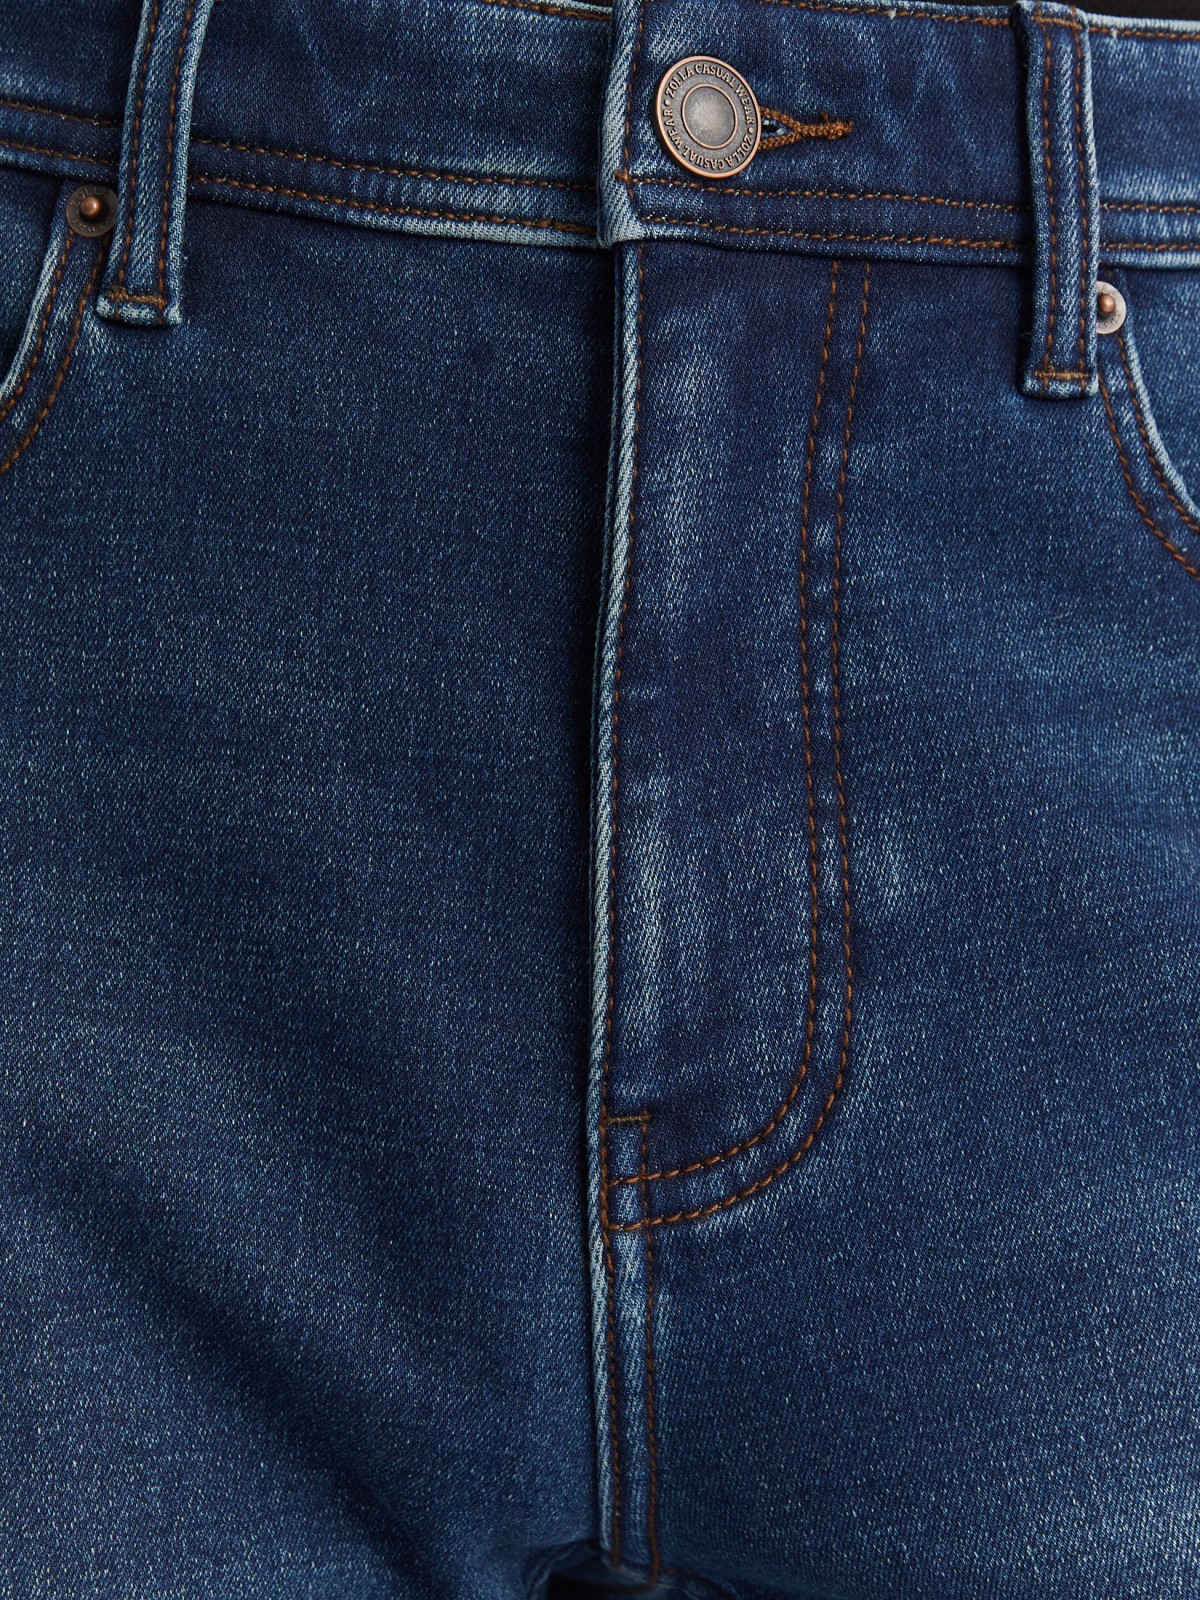 Утеплённые джинсы фасона Slim с флисом внутри